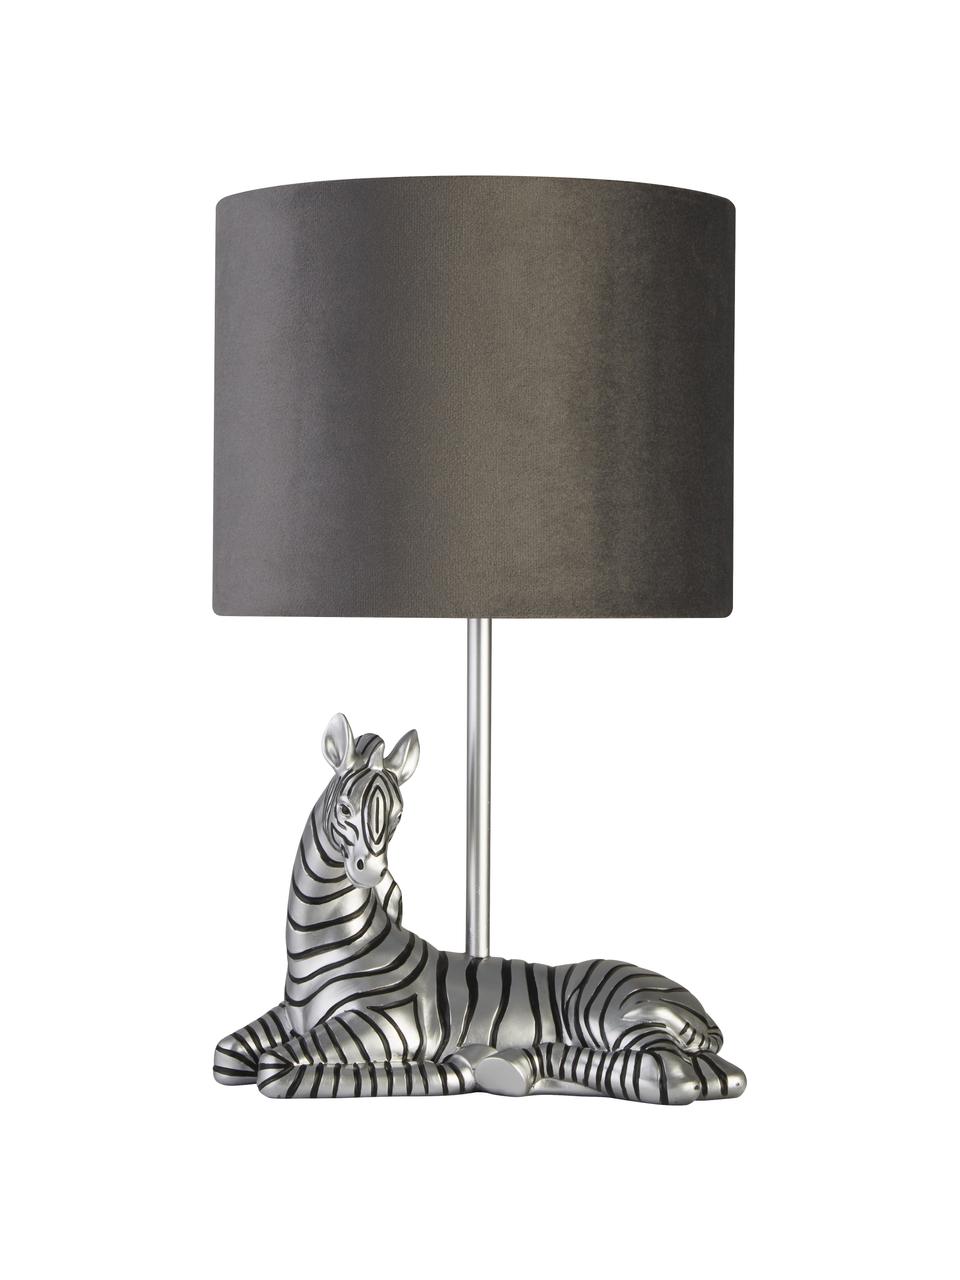 Design Tischlampe Zebra mit Samtschirm, Lampenschirm: Samt, Grau, Silberfarben, Schwarz, Ø 20 x H 35 cm